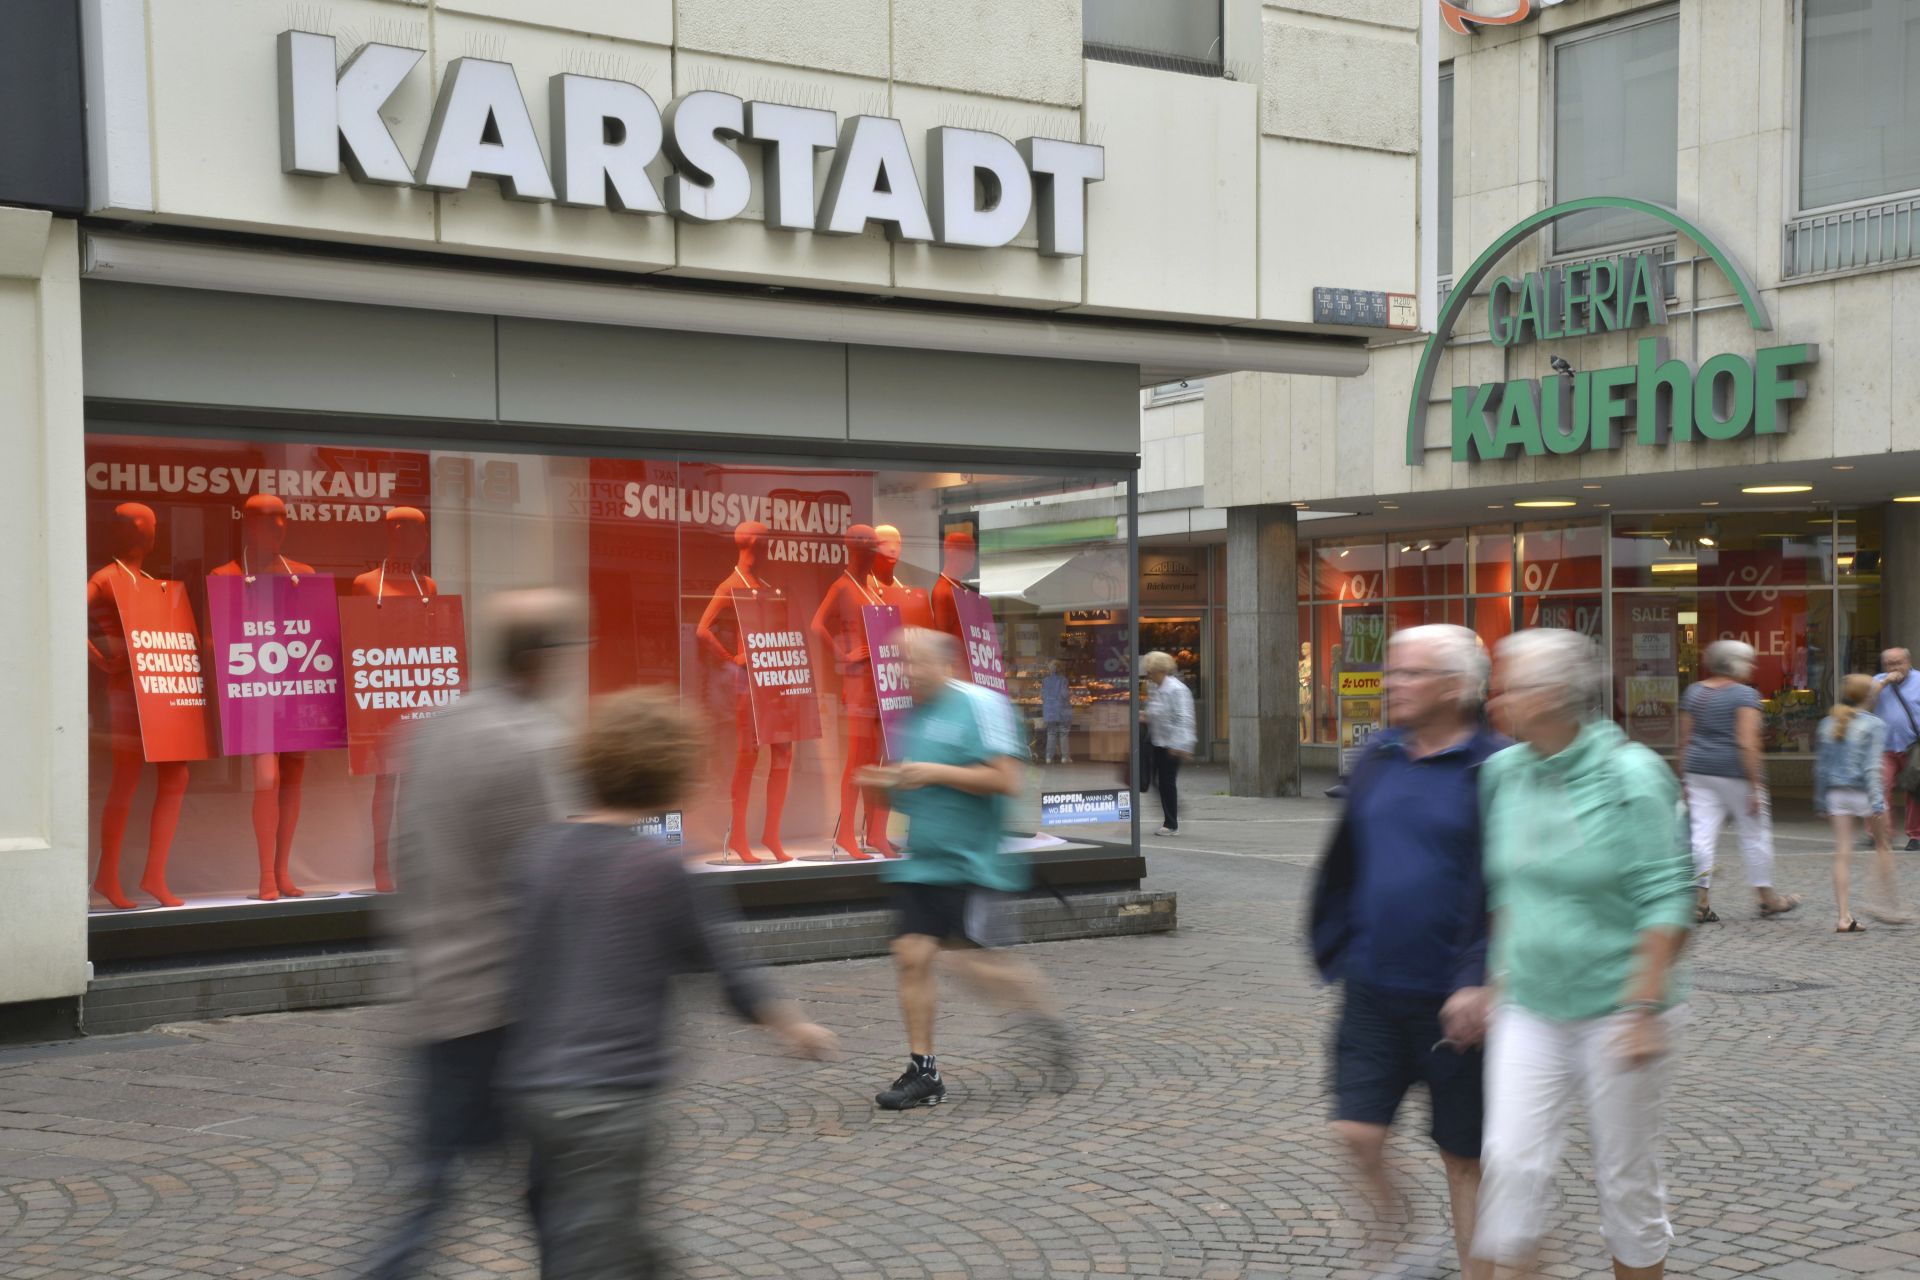 Карщат (Karstadt) и Кауфхоф (Kaufhof), двете най-големи вериги универсални магазини в Германия, сливат дейността си